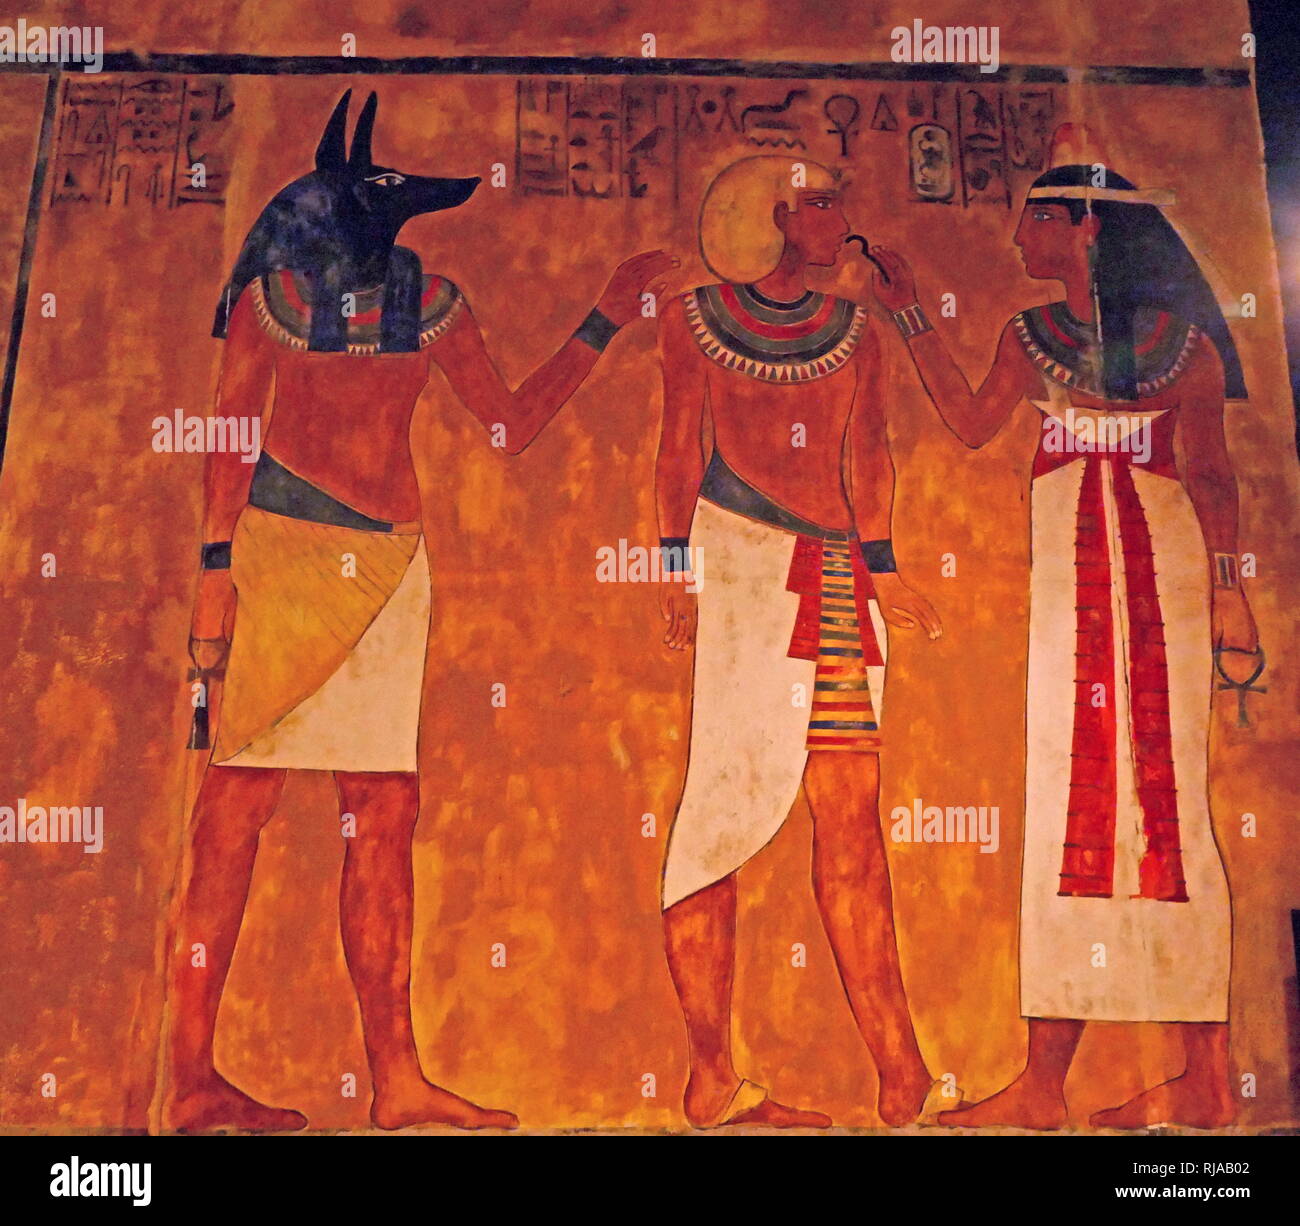 Wiederaufbau der Mauer um das Grab von tutenkamen; 18. Dynastie alten ägyptischen Pharao. Zeigt Anubis Vorbereitung der König für das Leben nach dem Tod. Tut-ench-Amun (regierte 1332-1323 v. Chr.). Es wurde von Howard Carter im Jahre 1925 im Grab KV 62 entdeckt und ist jetzt im Ägyptischen Museum in Kairo untergebracht Stockfoto